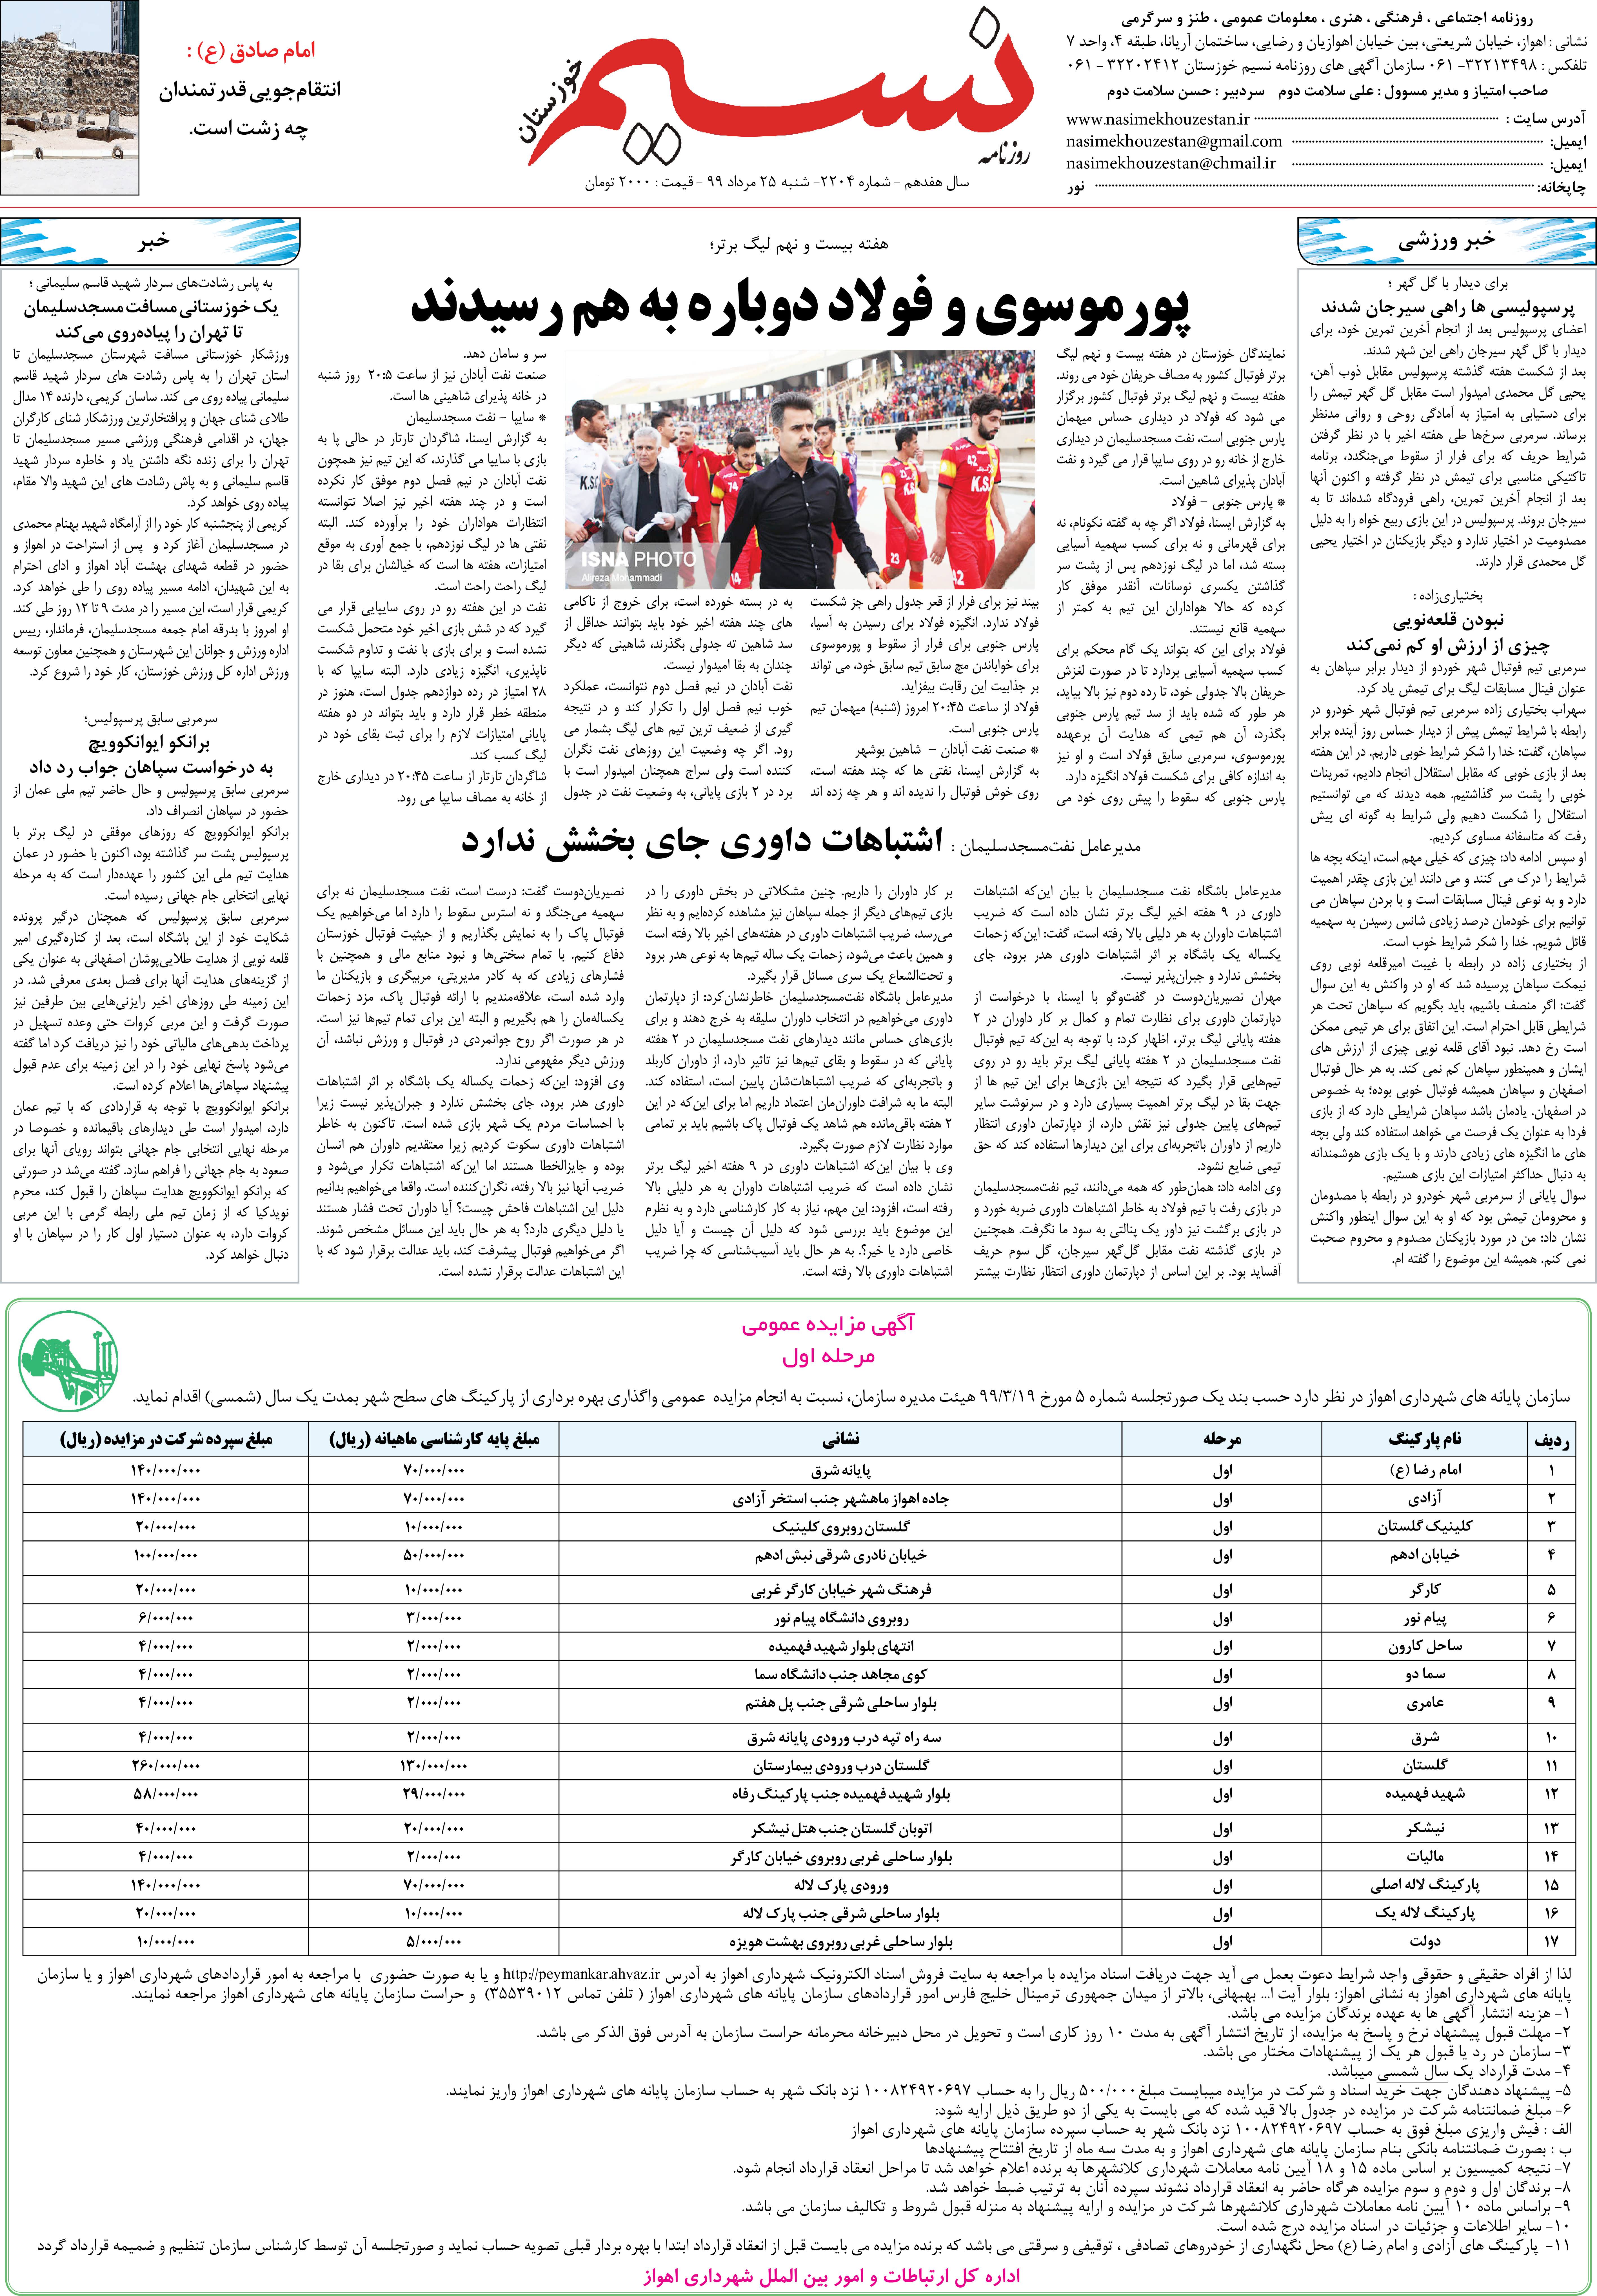 صفحه آخر روزنامه نسیم شماره 2204